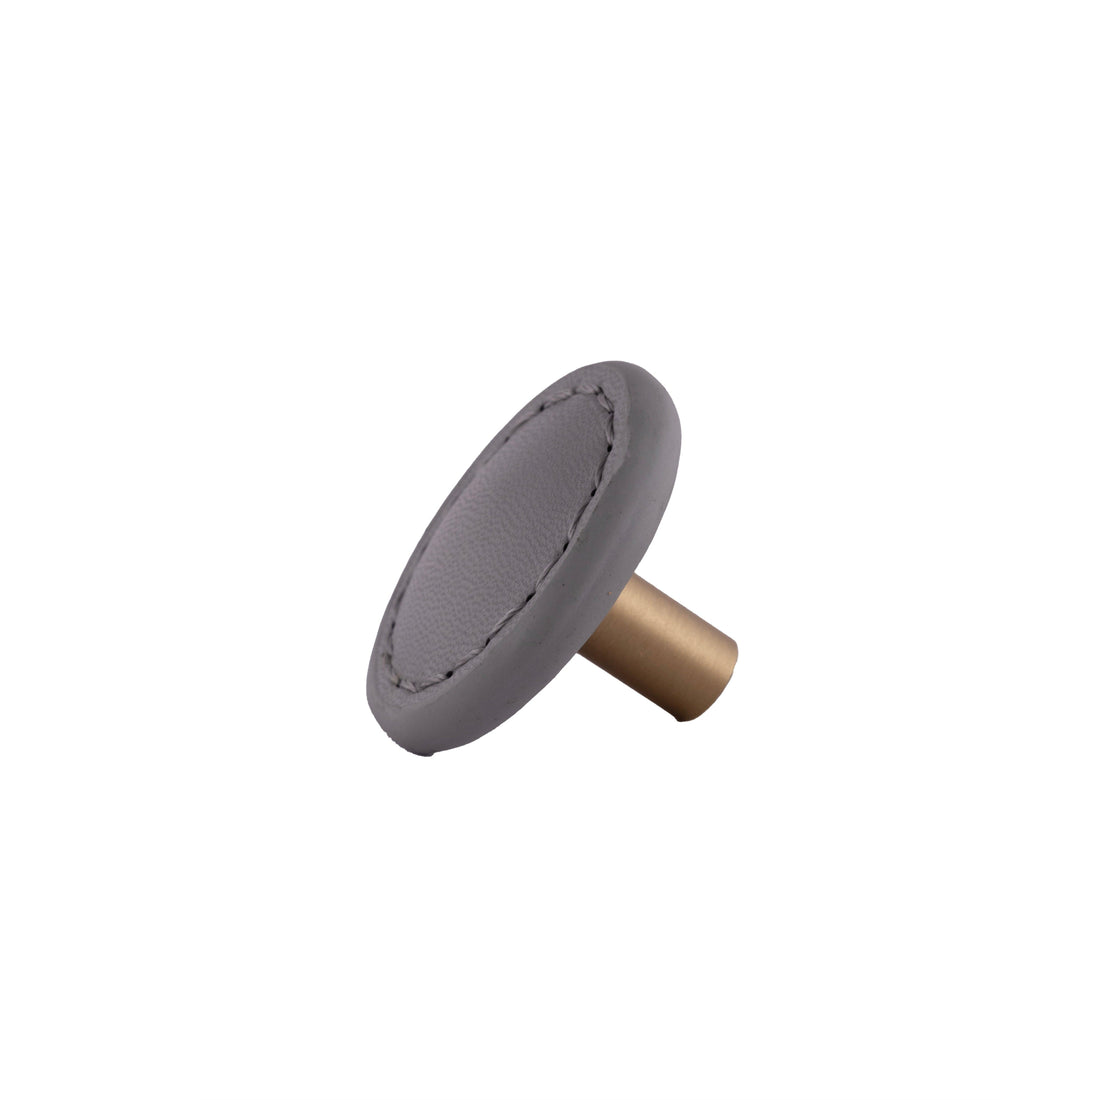 Sofia Round knob Knob 33mm / Grey / Leather - M A N T A R A